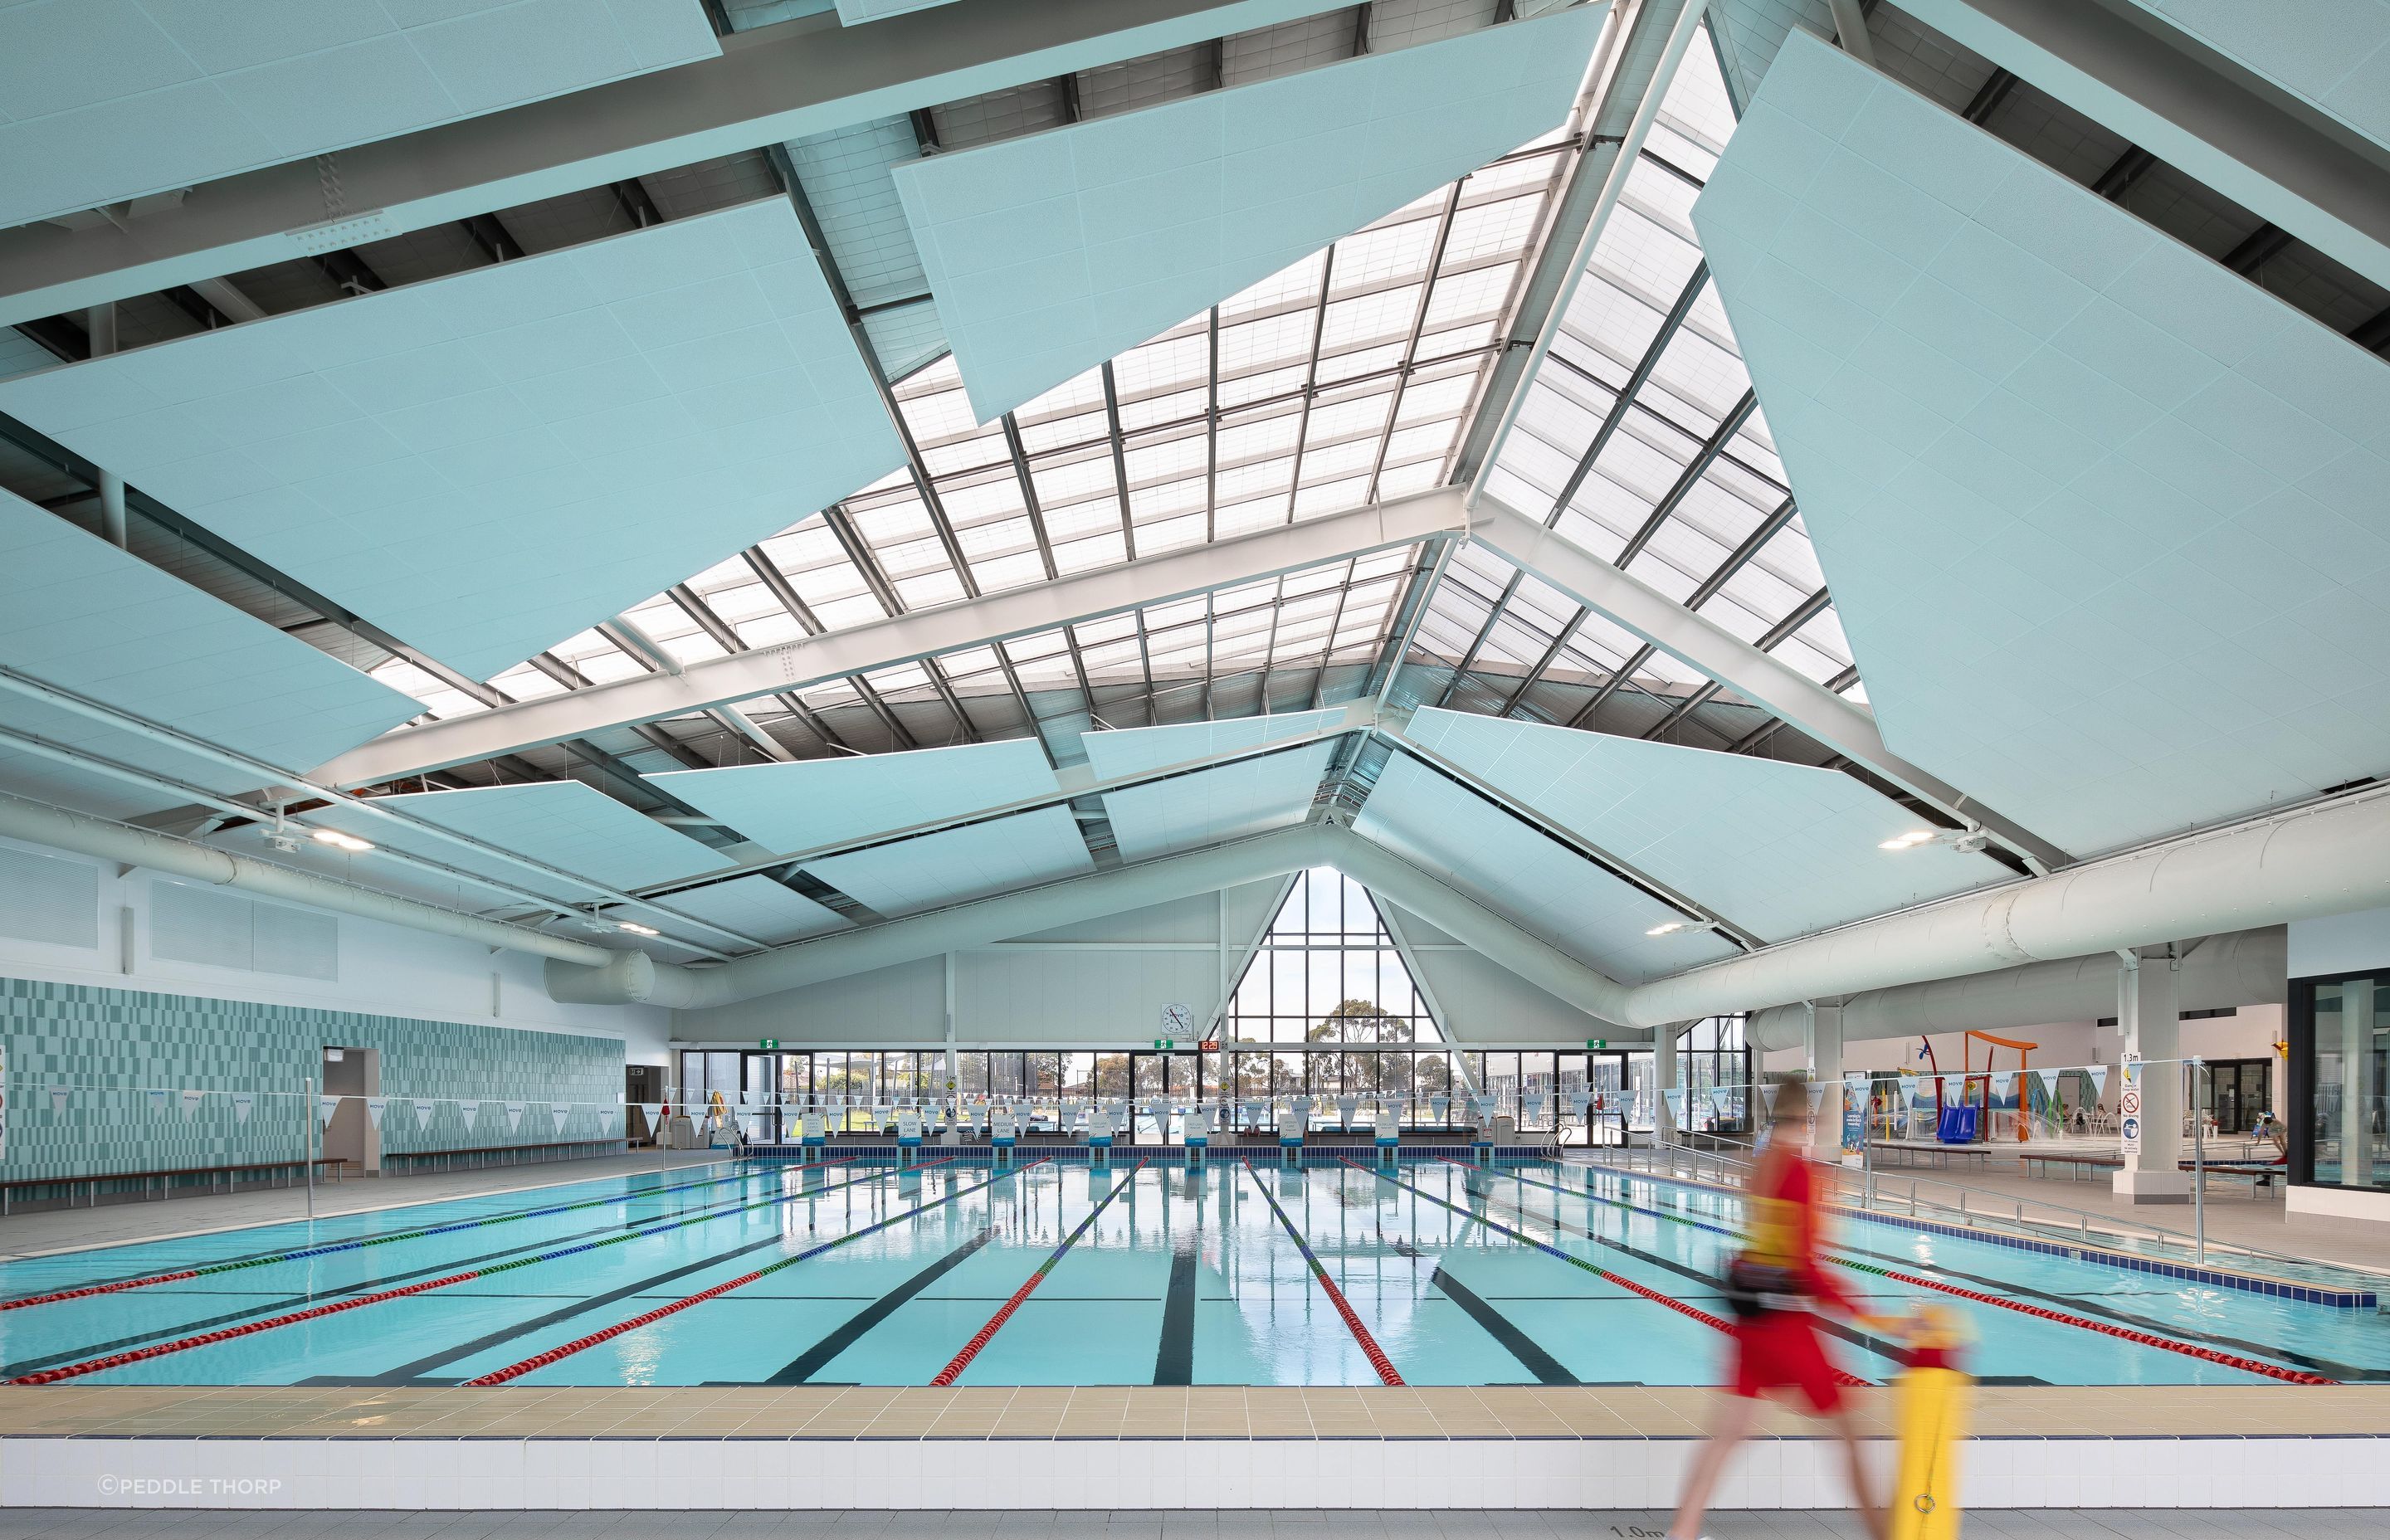 YAWA's eight-lane swimming pool.